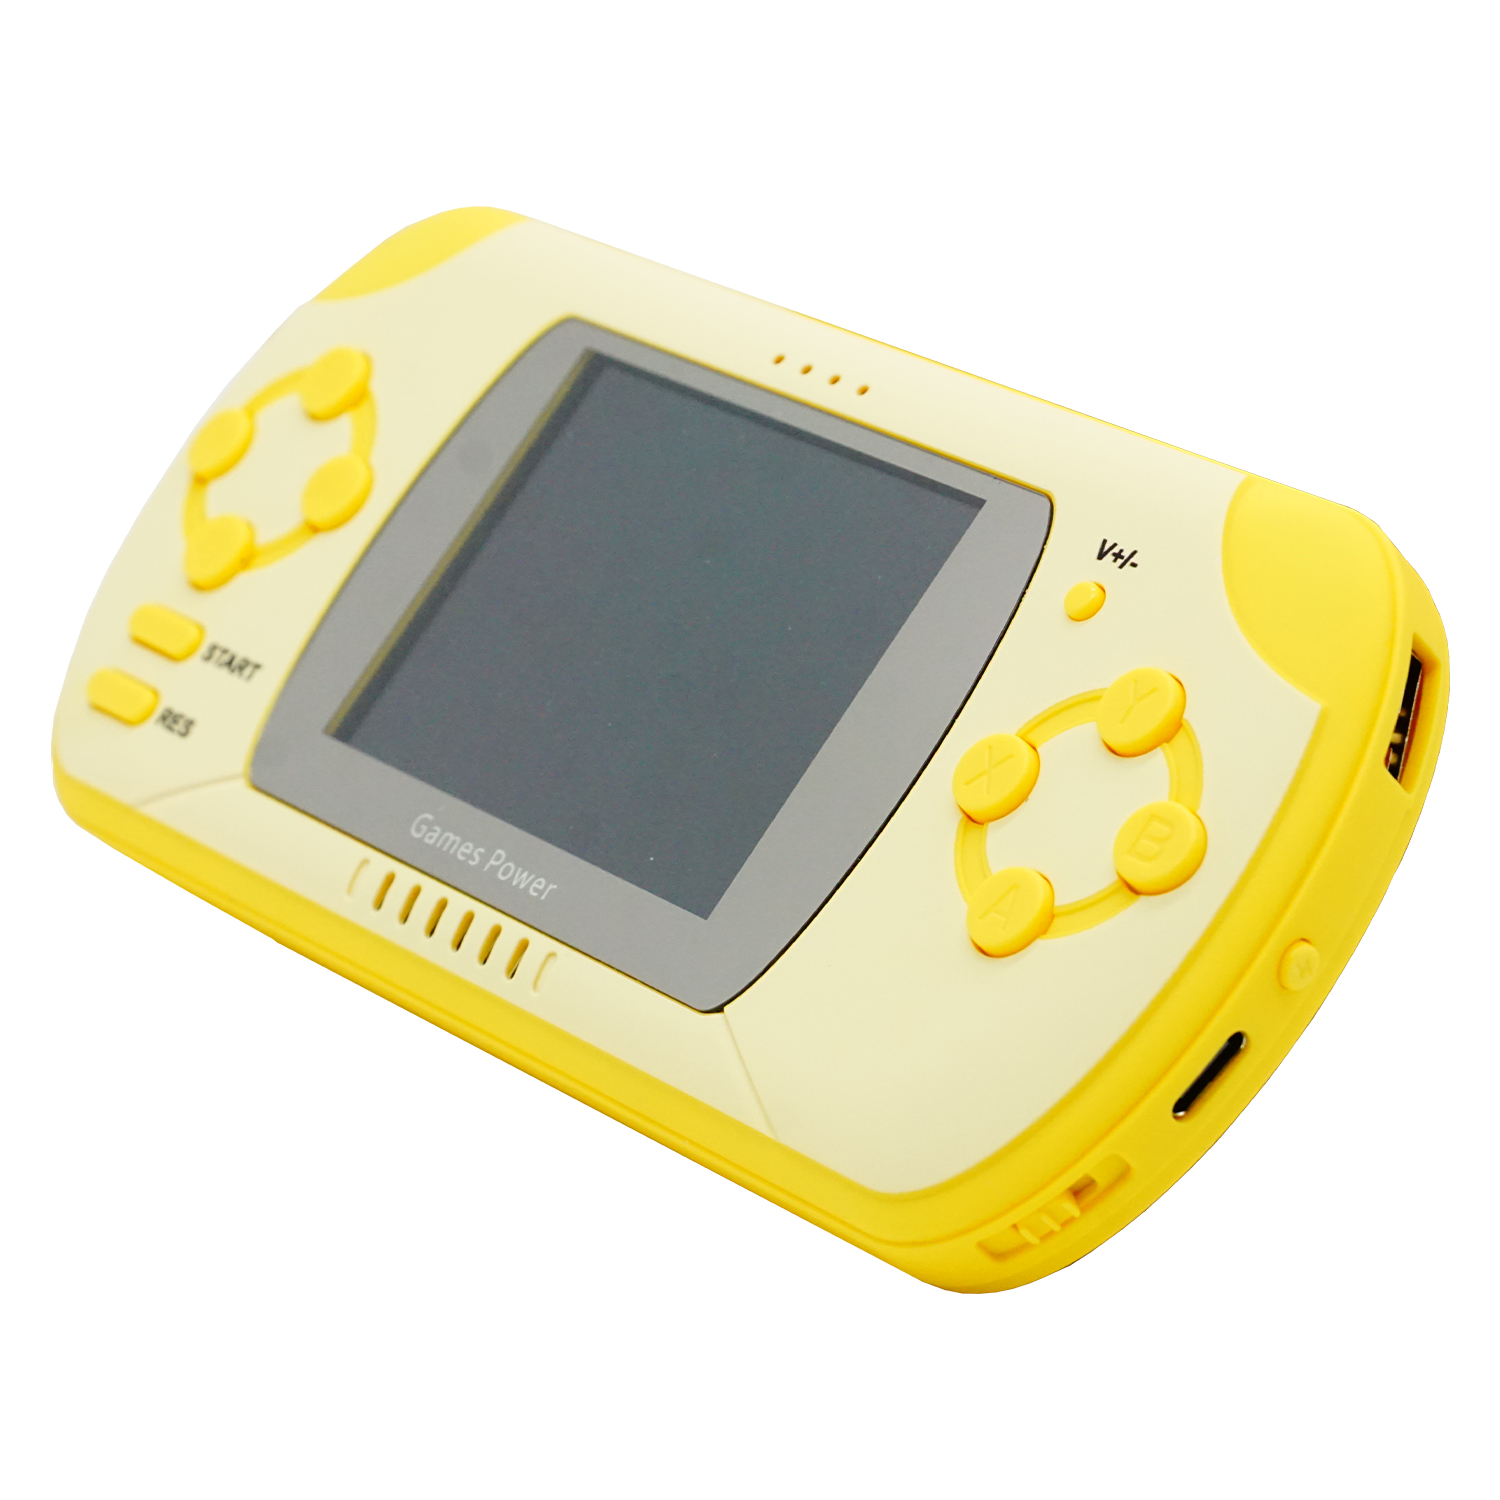 Console de Jogos Blulory GP01 Game Power - Amarelo